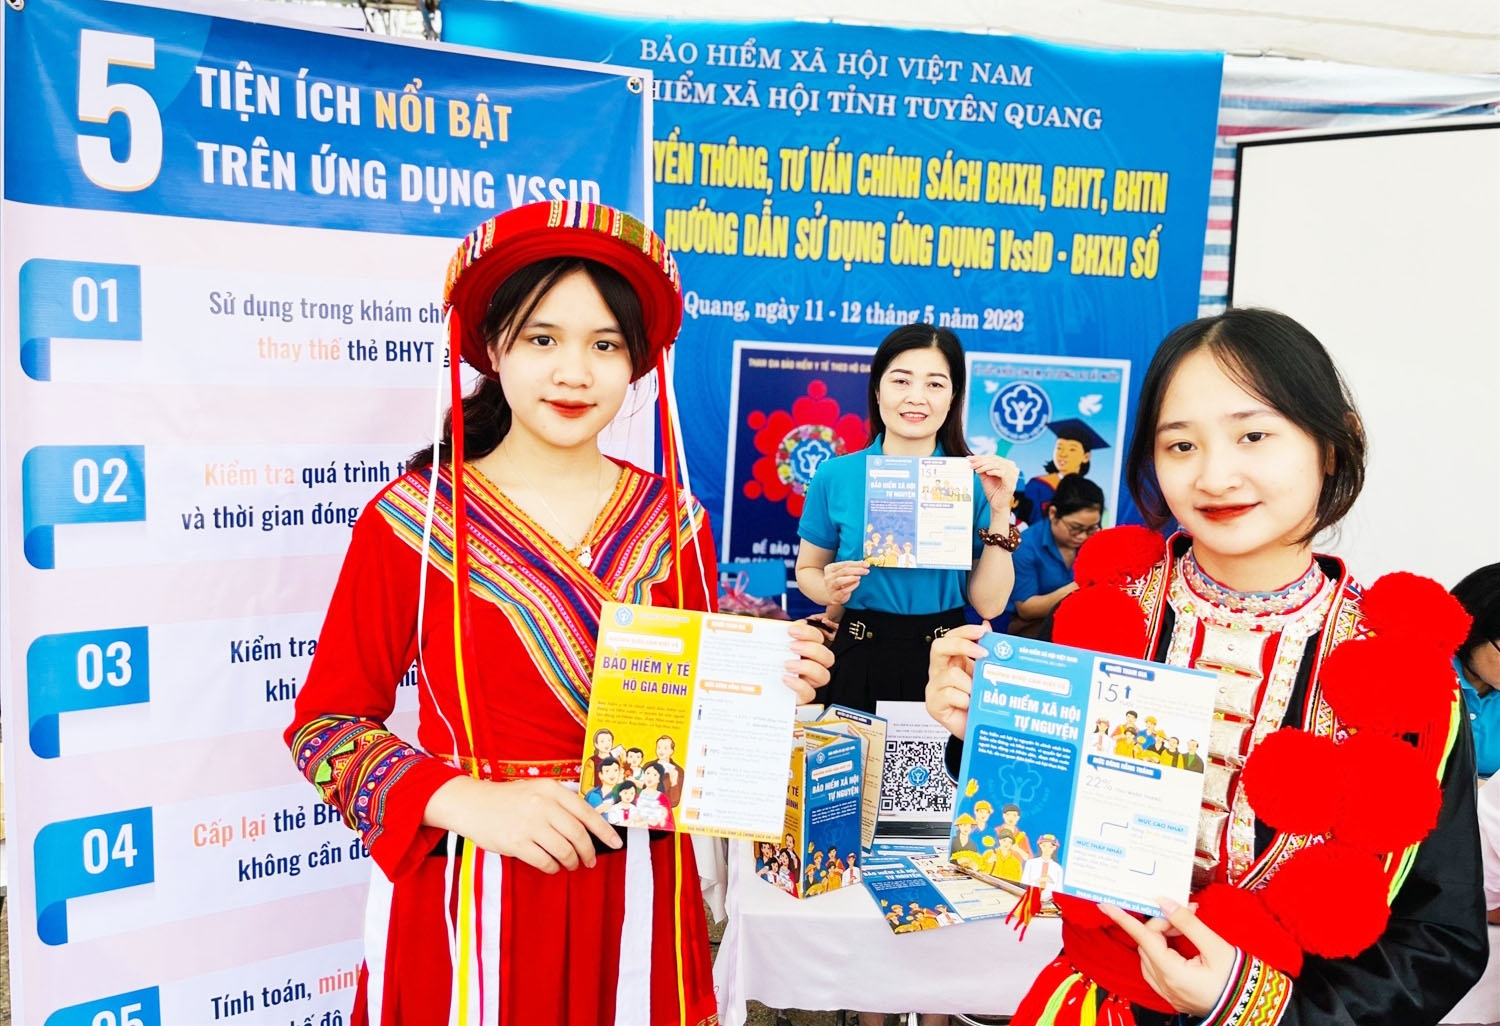 Bảo hiểm xã hội Việt Nam đã triển khai 5 nhóm tiện ích phục vụ thiết thực người dân và doanh nghiệp, lan tỏa vào cuộc sống